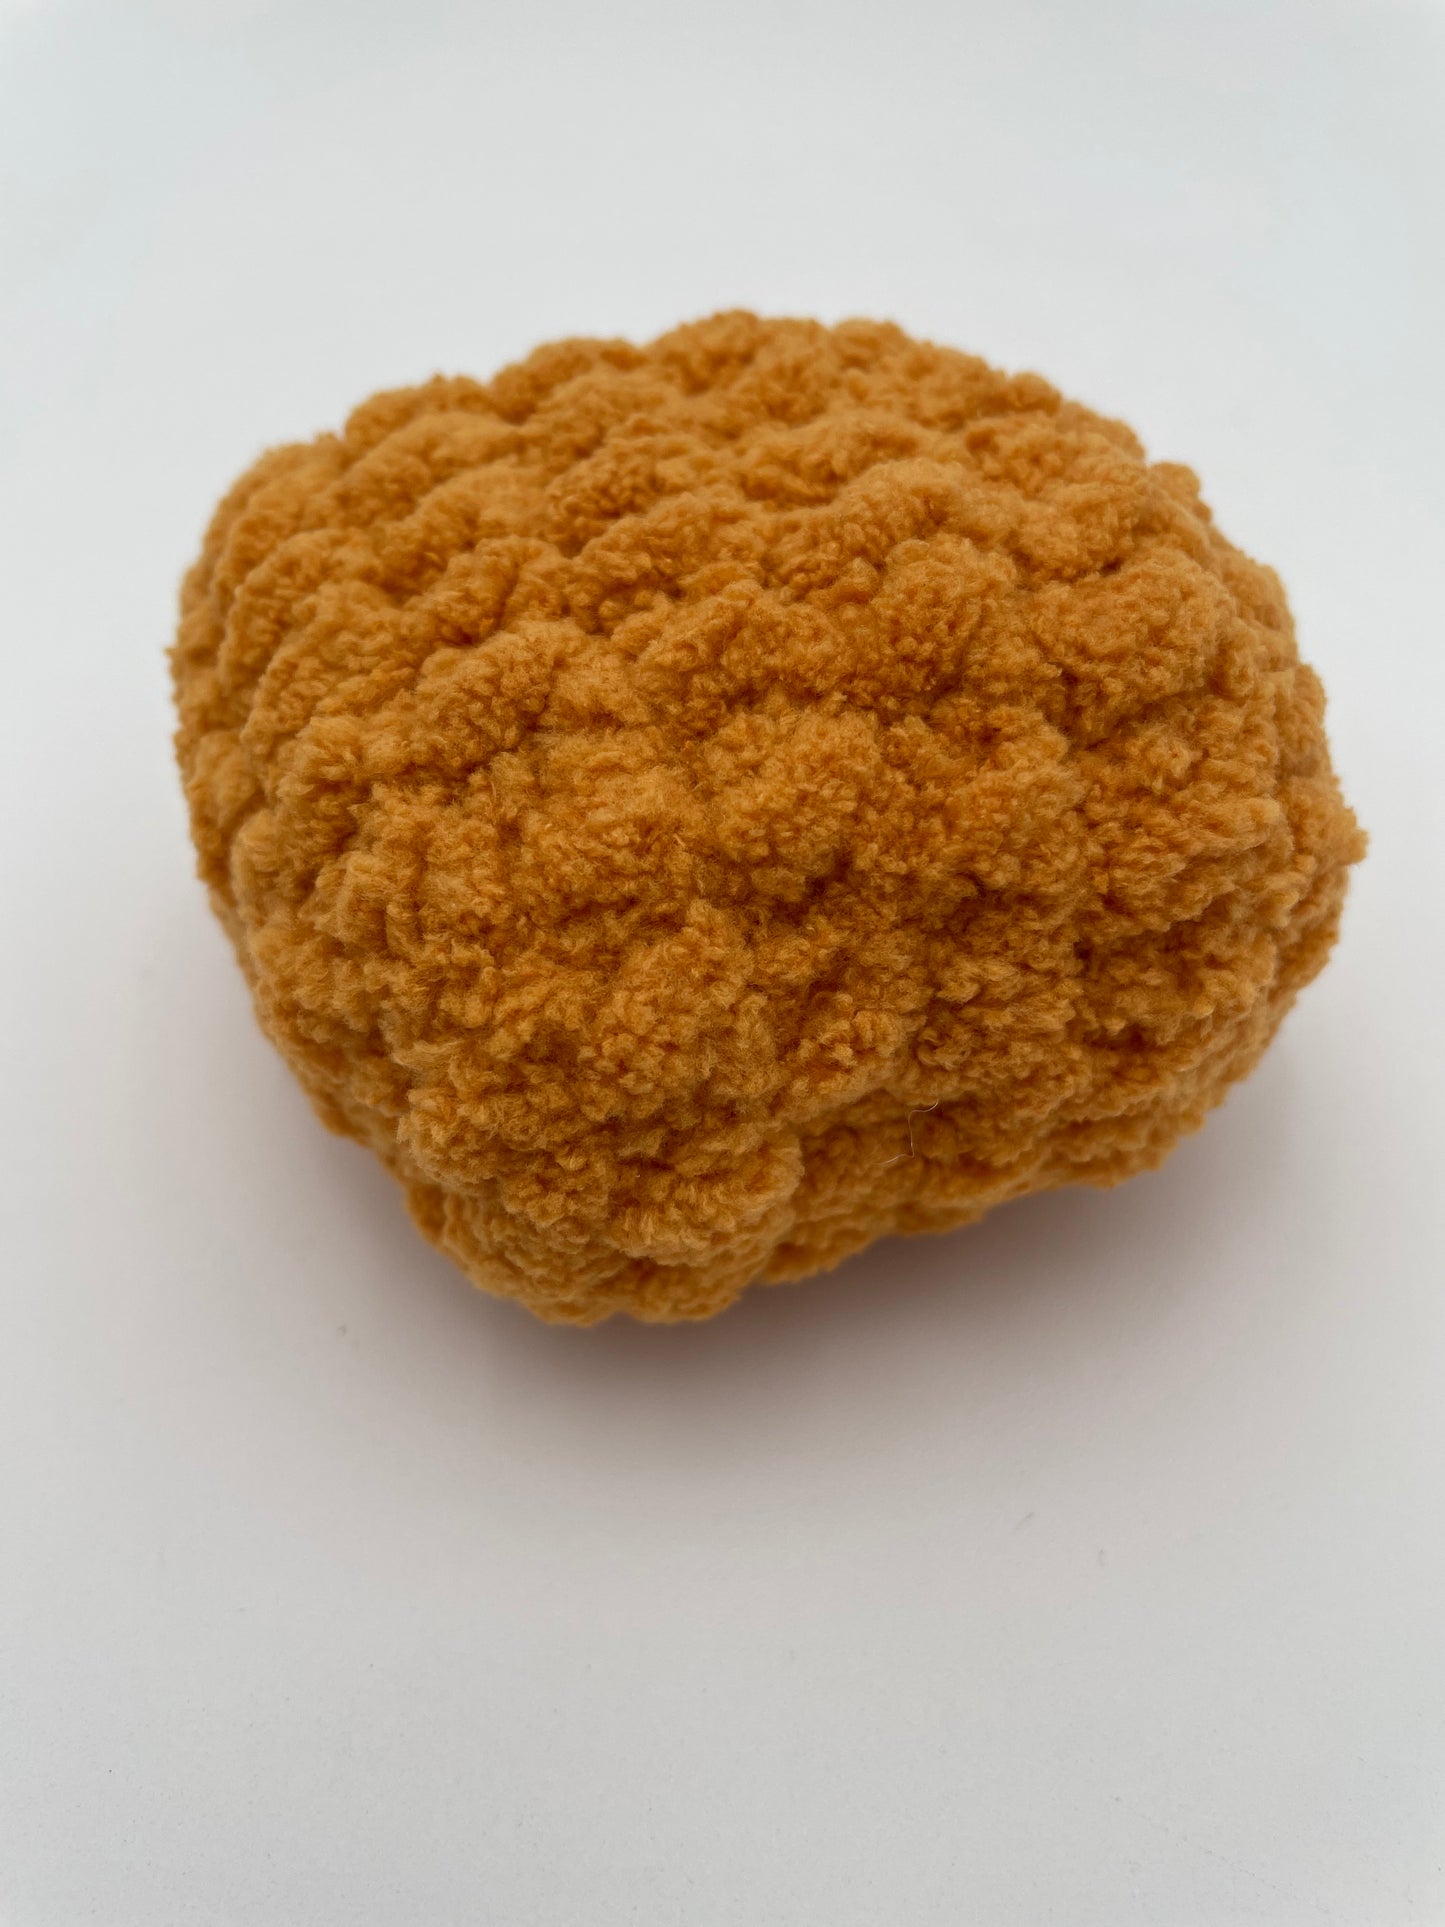 Munchies - XL Chicken Nuggets